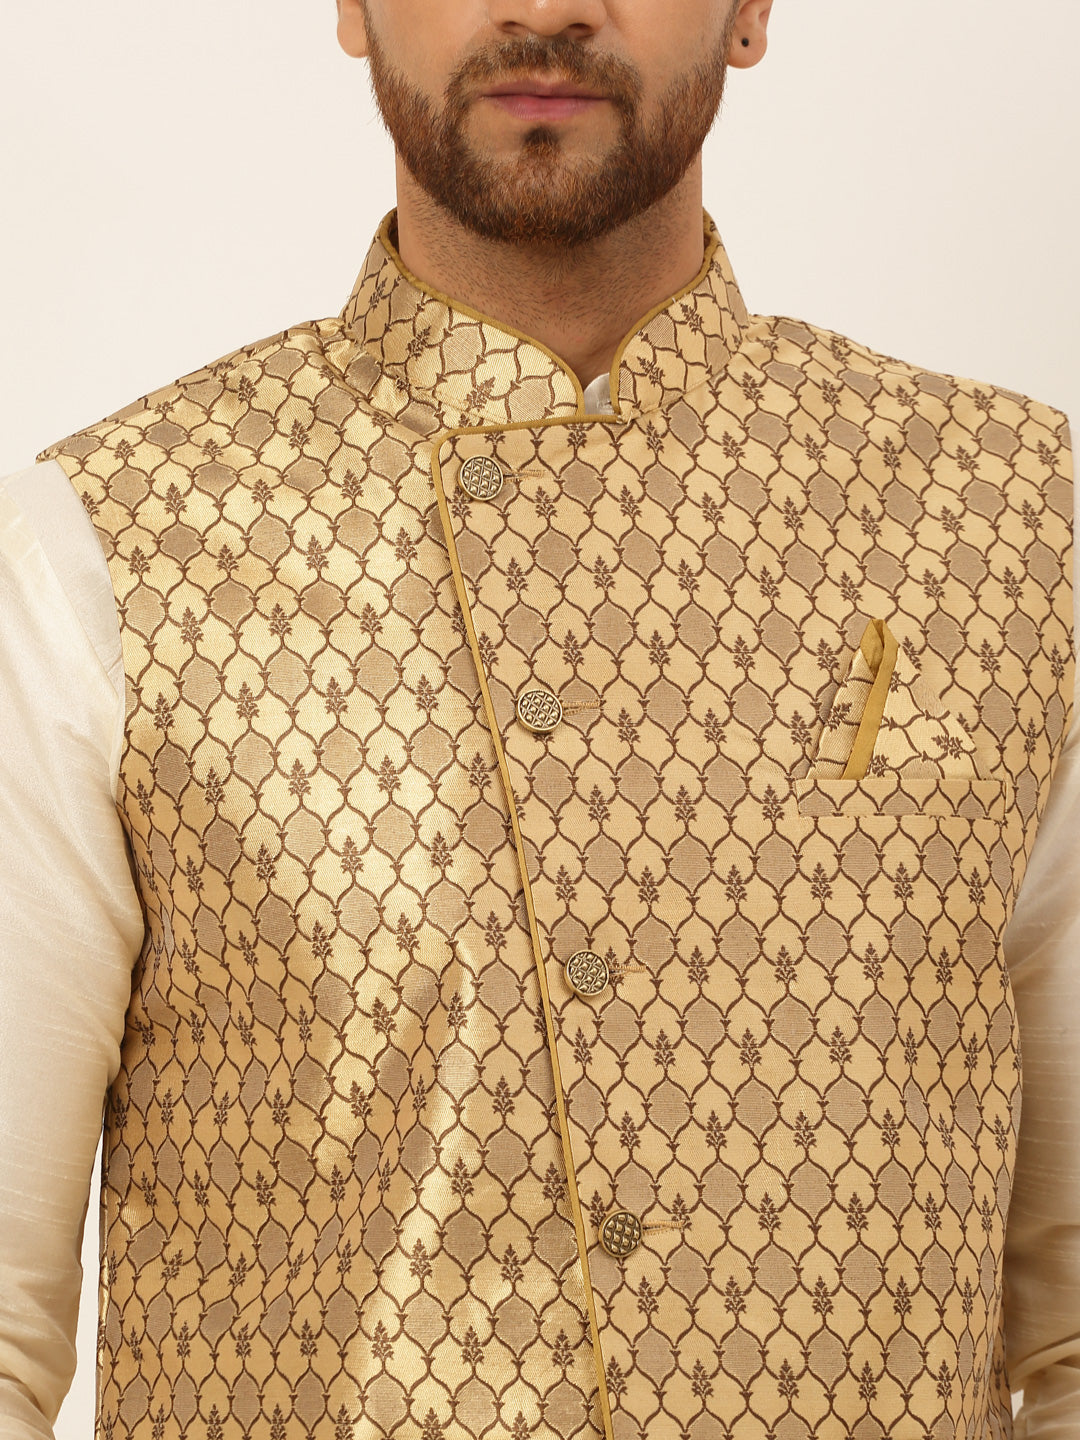 Jompers Men's Woven Design Waistcoat - Golden - Distacart